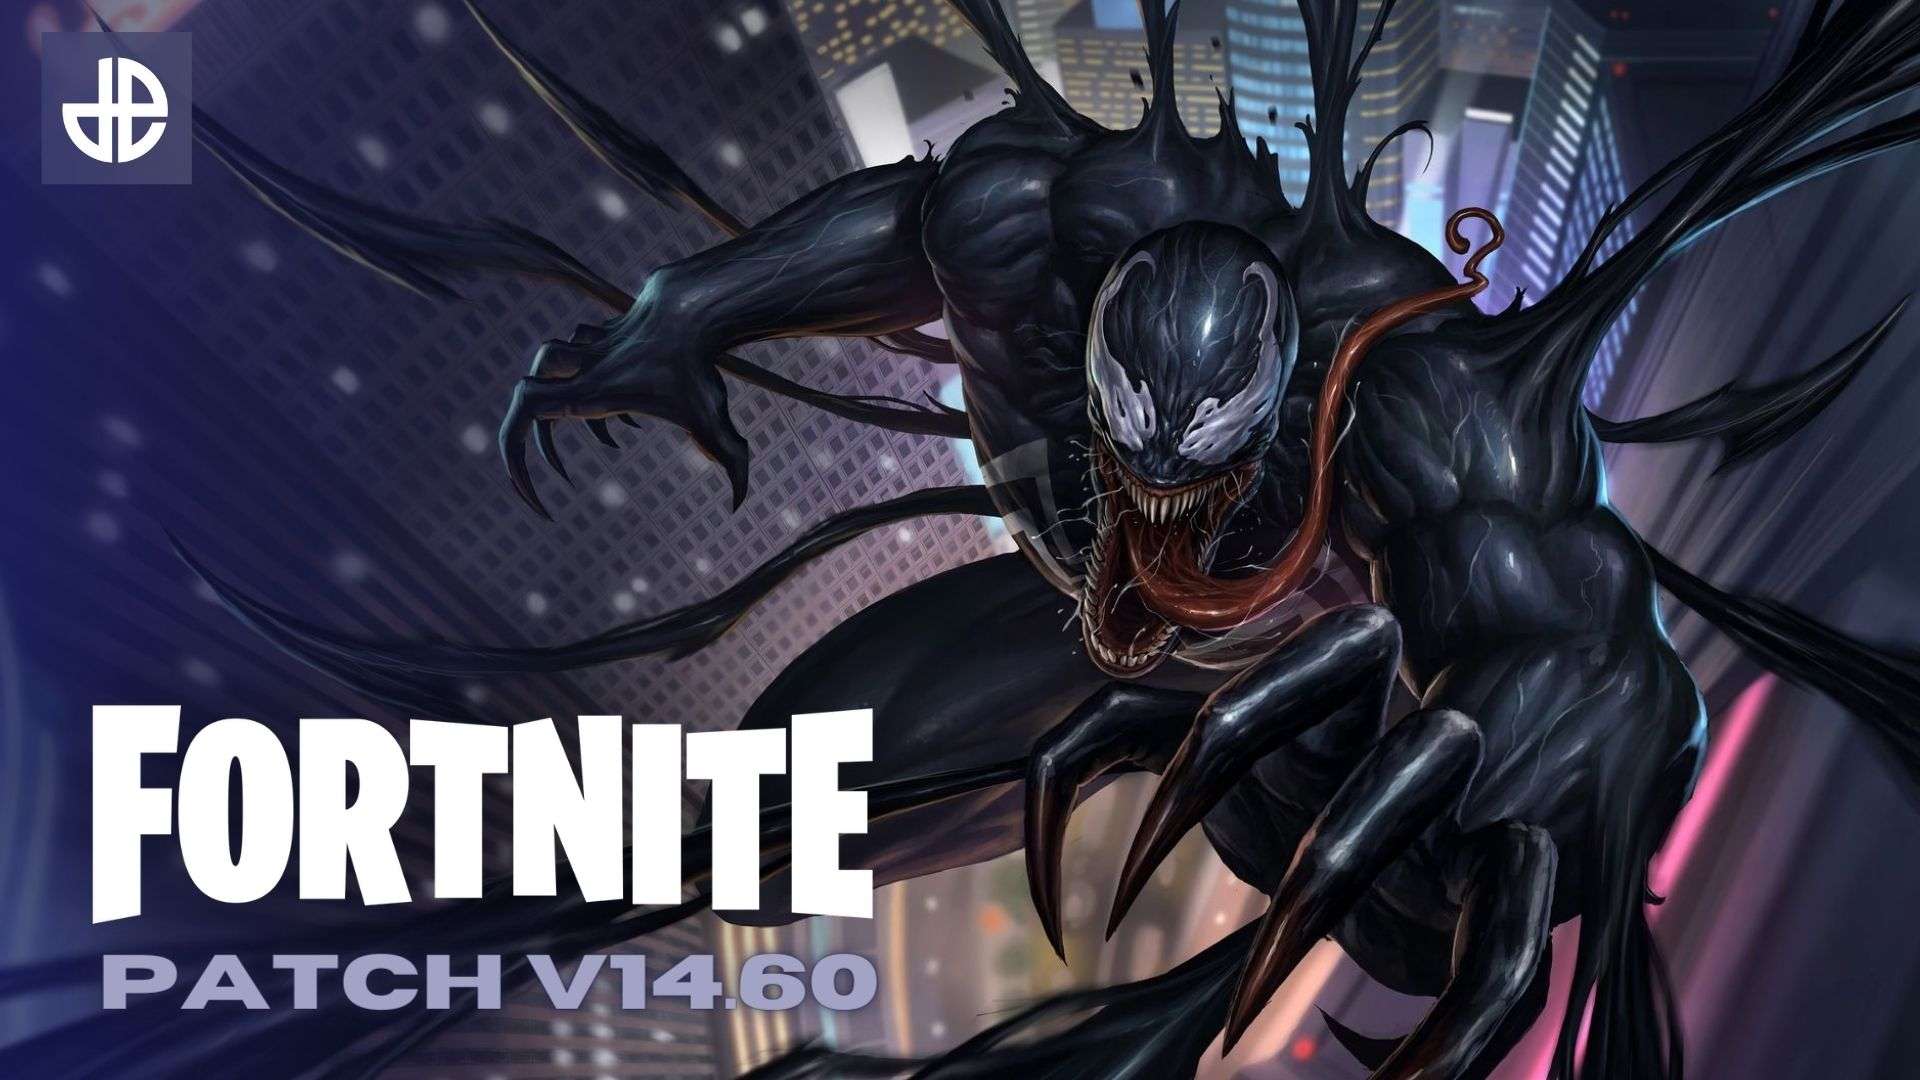 Venom dives towards a Fortnite patch 14.60 logo.